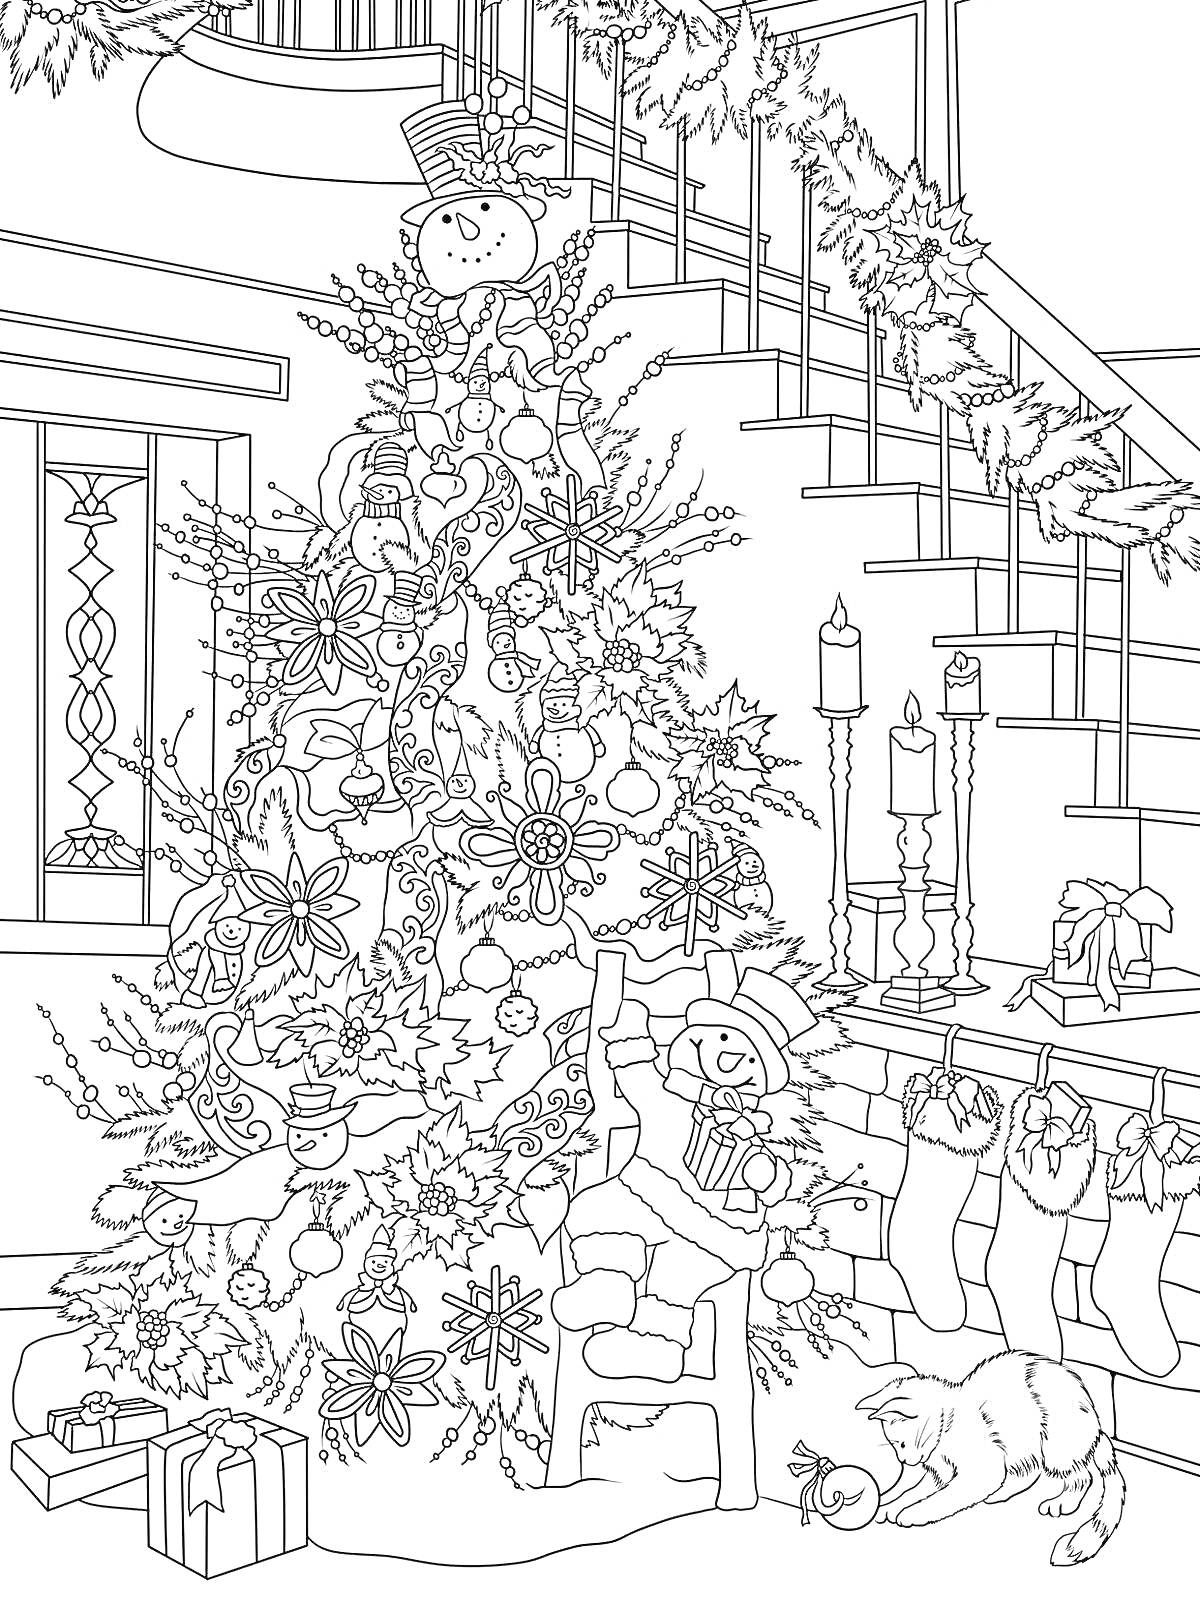 Раскраска Ёлка с игрушками, снеговик на вершине, мышонок с подарком, кошка возле ёлки, камин с рождественскими носками, свечи, подарки под ёлкой, лестница с гирляндой